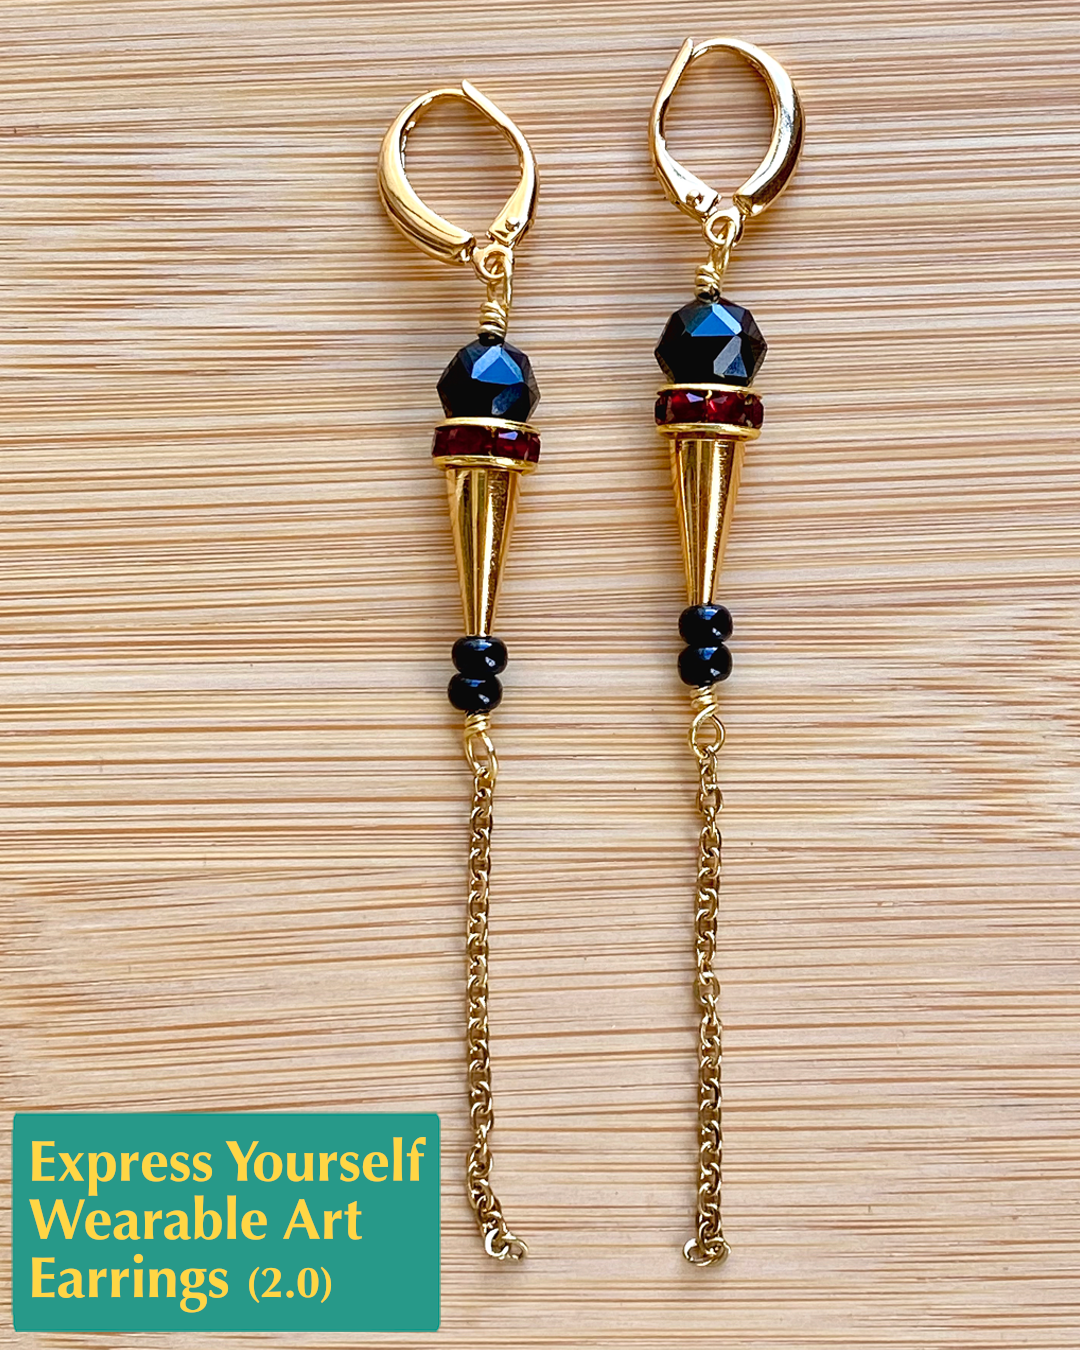 Express Yourself! Wearable Art Earrings 2.0